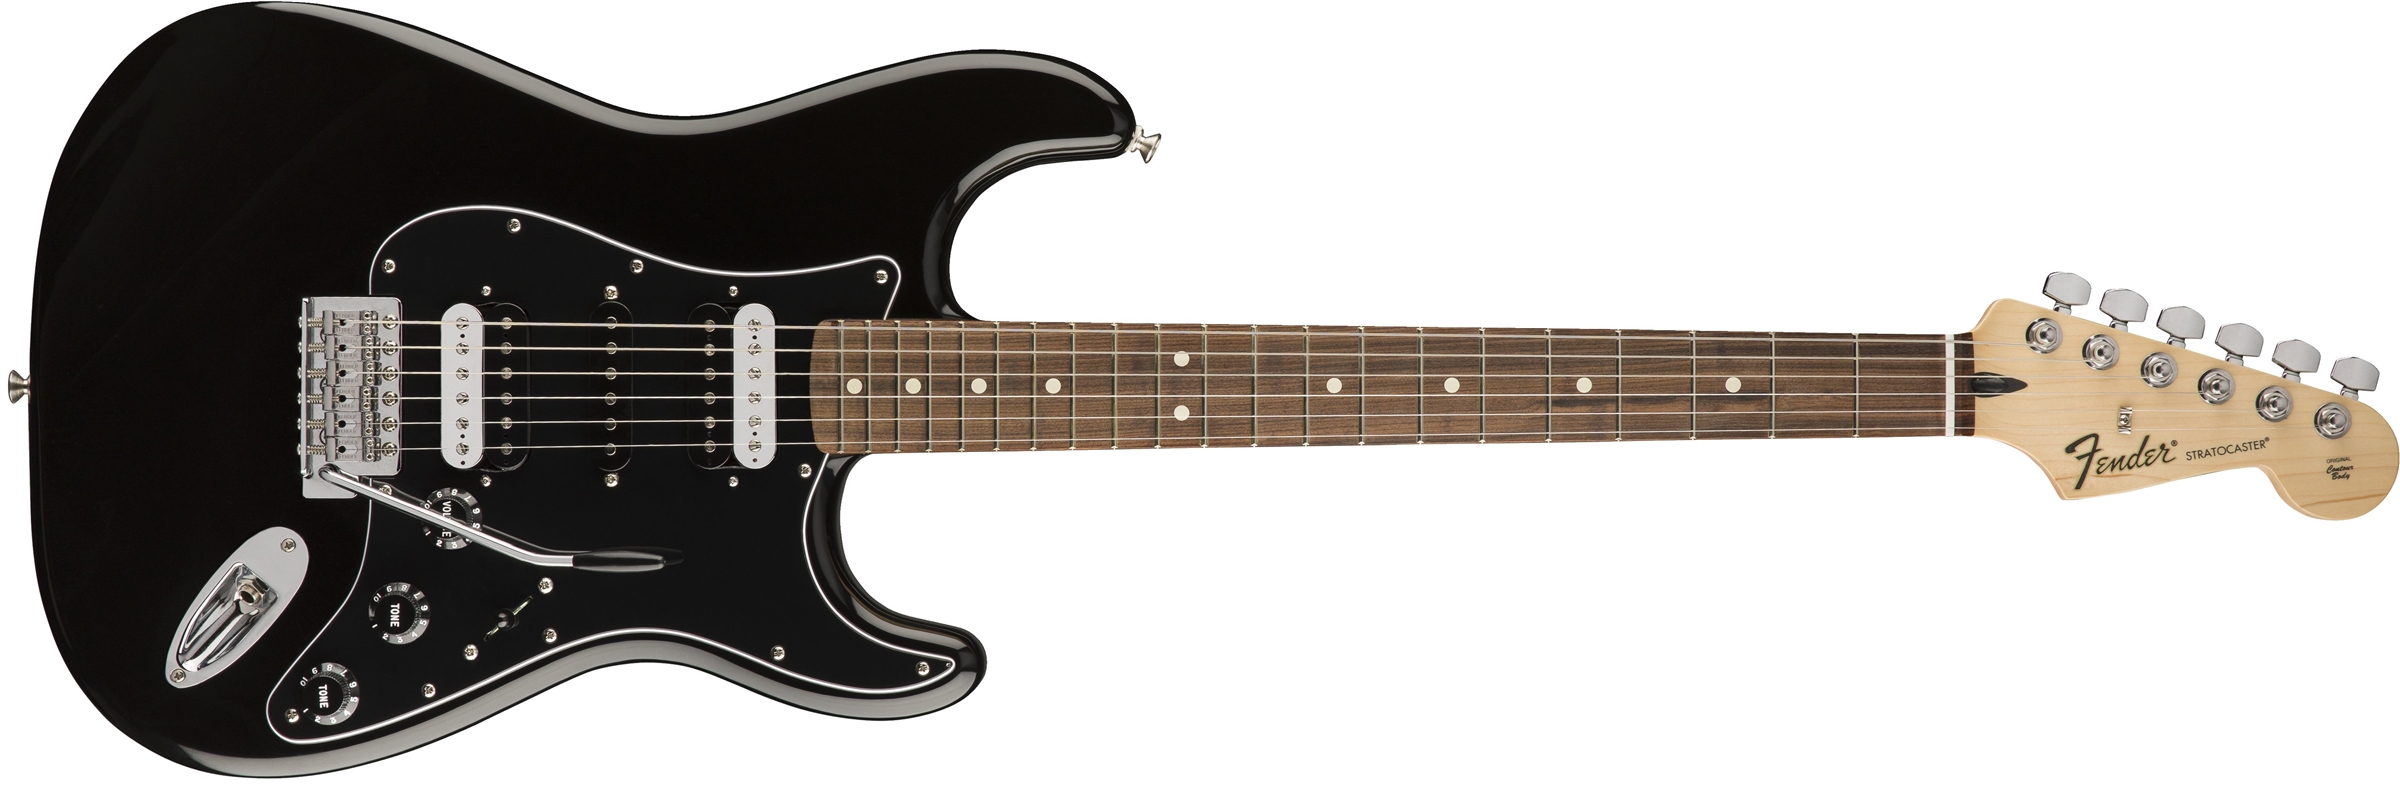 Standard Stratocaster HSH - Fender Standard Stratocaster HSH - Audiofanzine